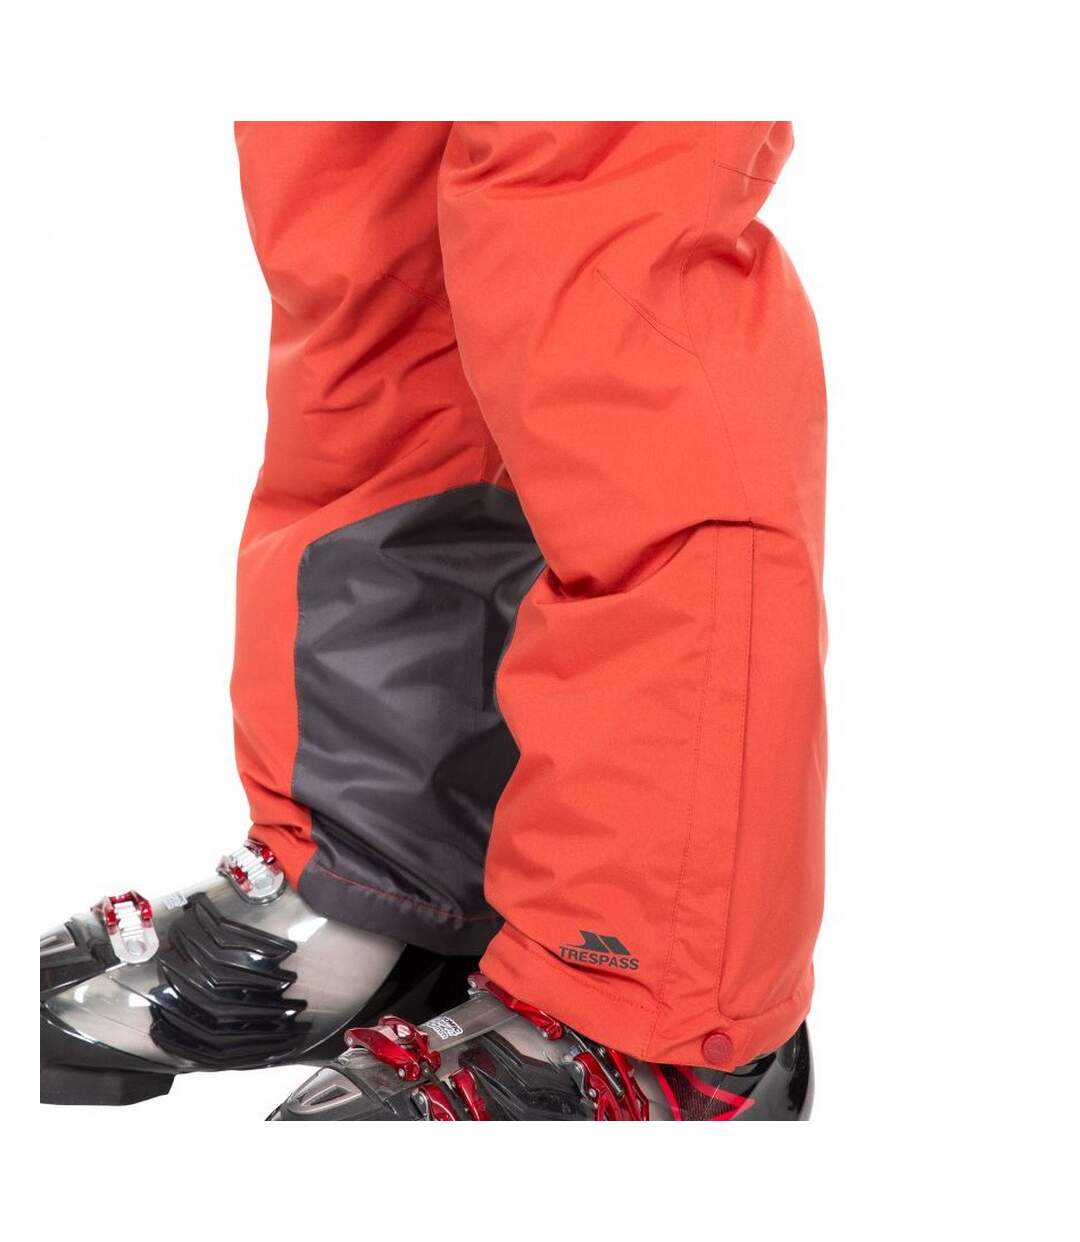 Trespass - Pantalon de ski TREVOR - Homme (Rouge) - UTTP5222